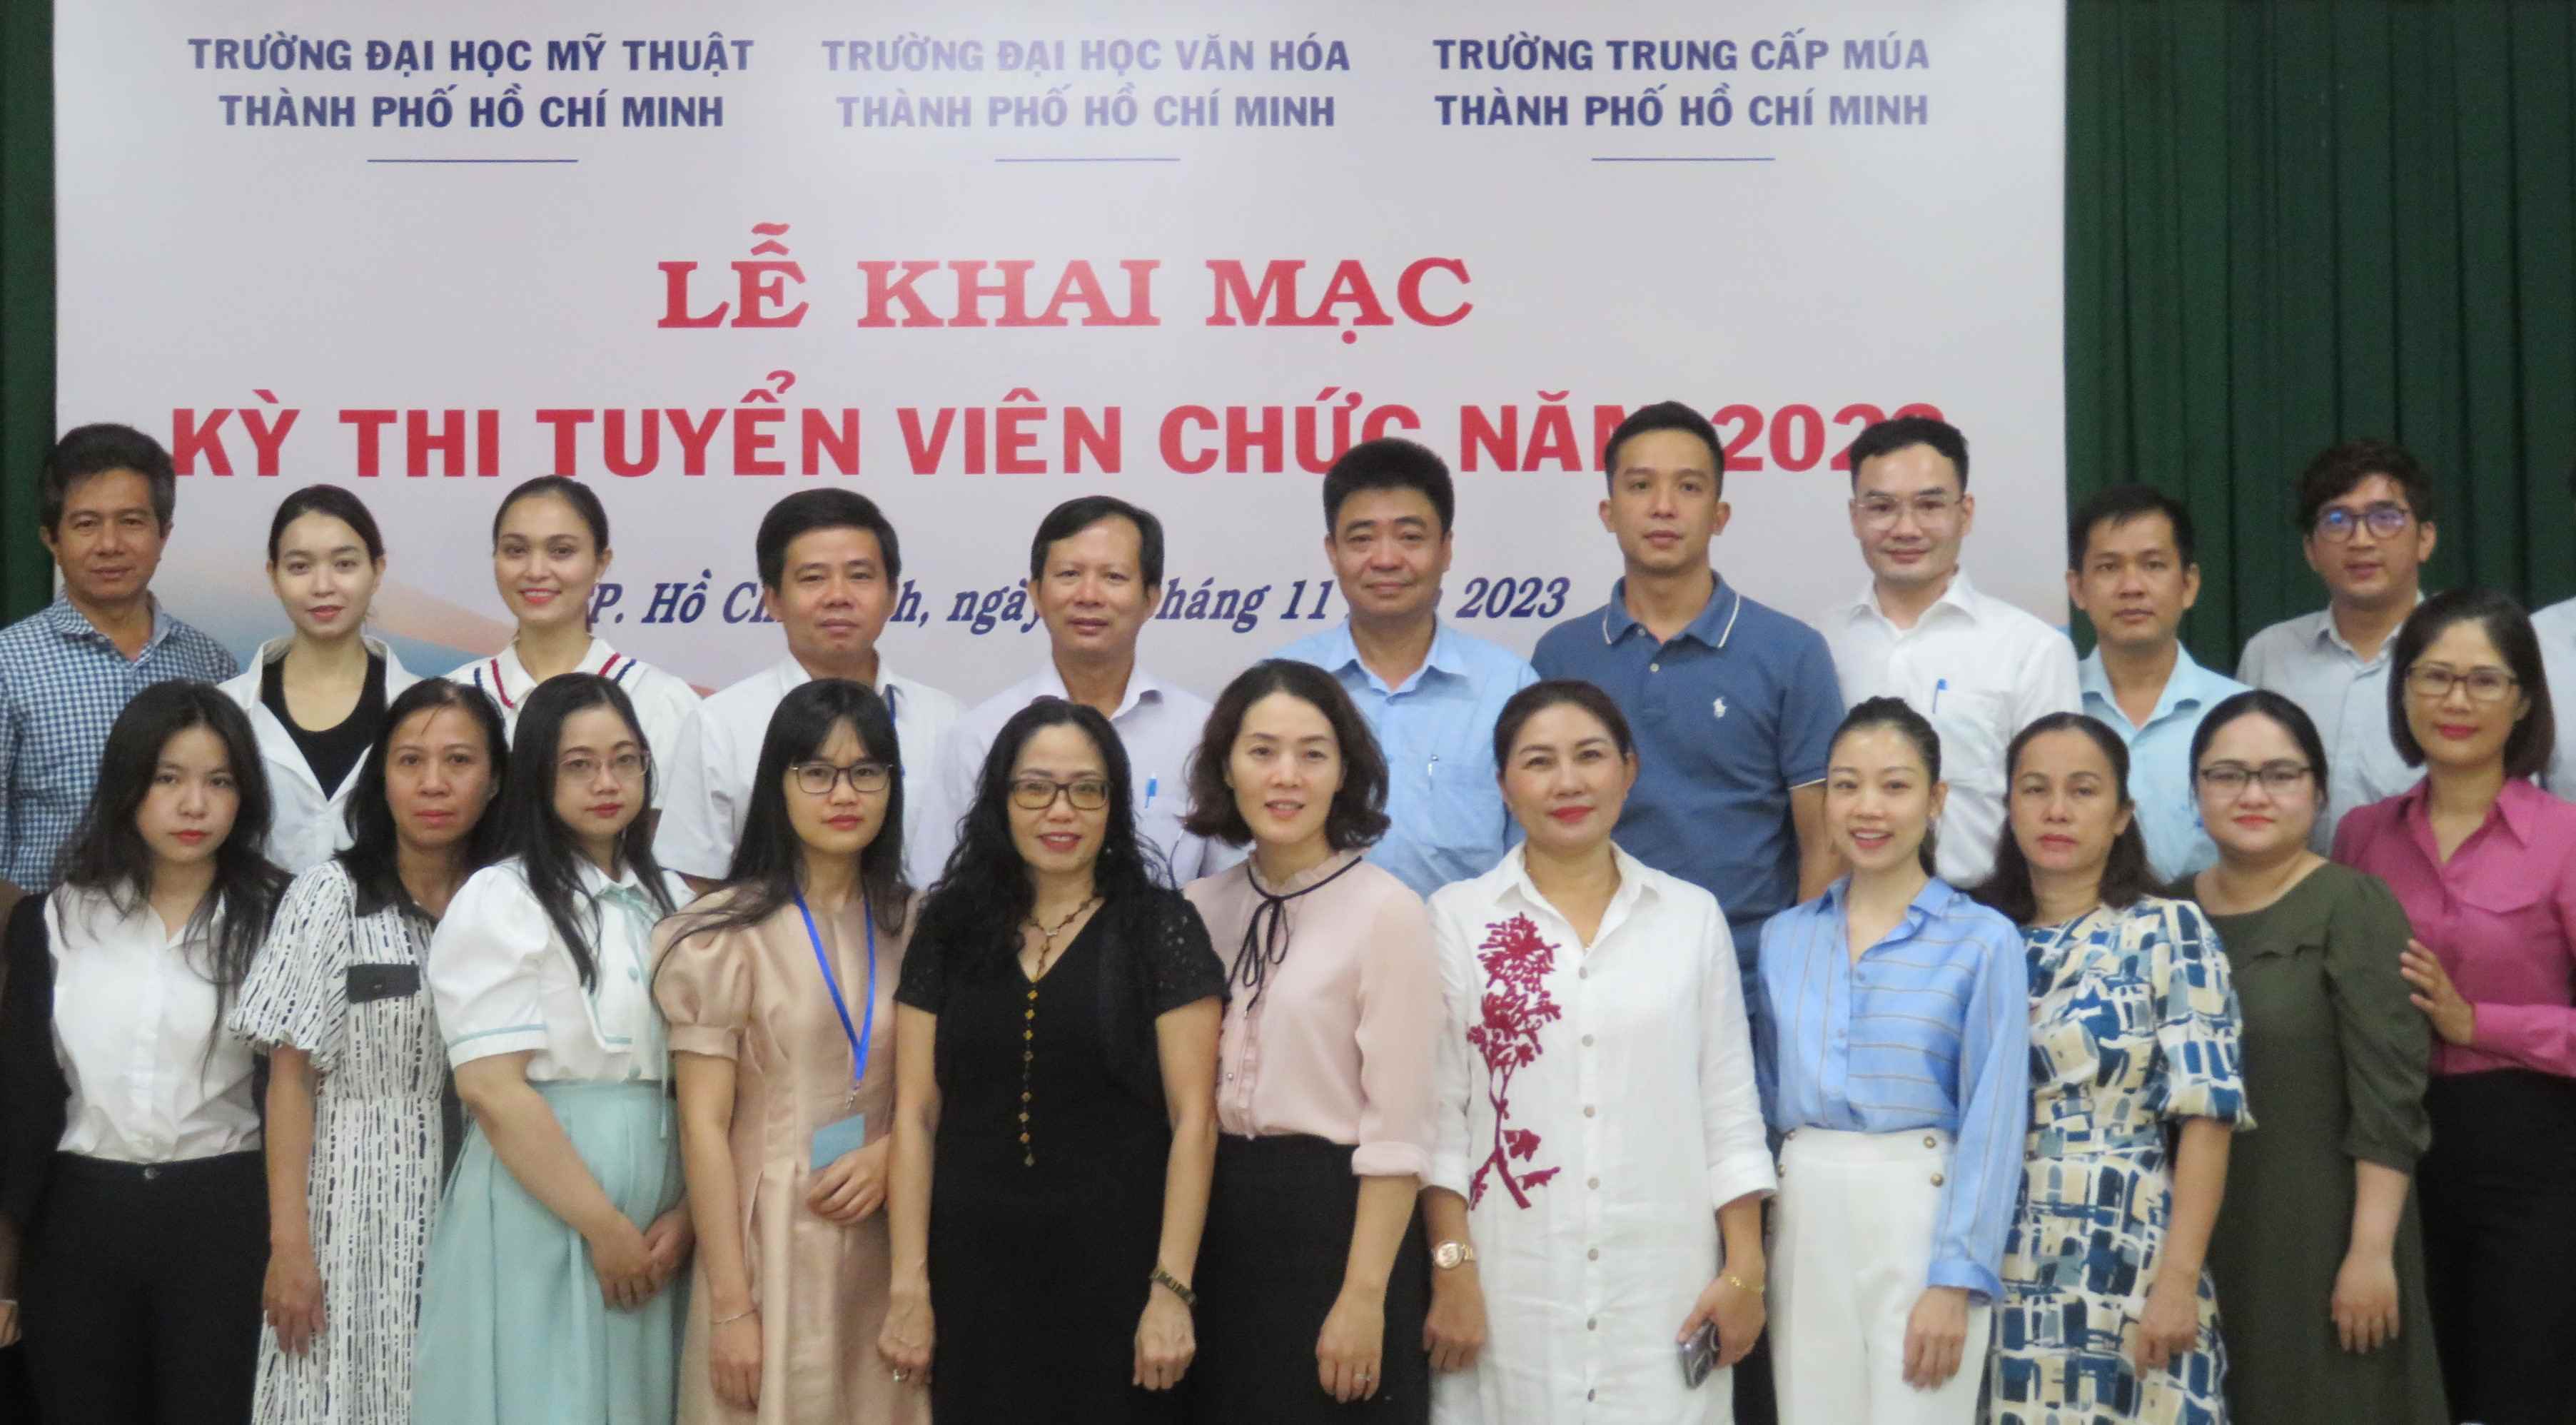 365bet de
. Hồ Chí Minh tổ chức Lễ khai mạc kỳ thi tuyển dụng viên chức năm 2023